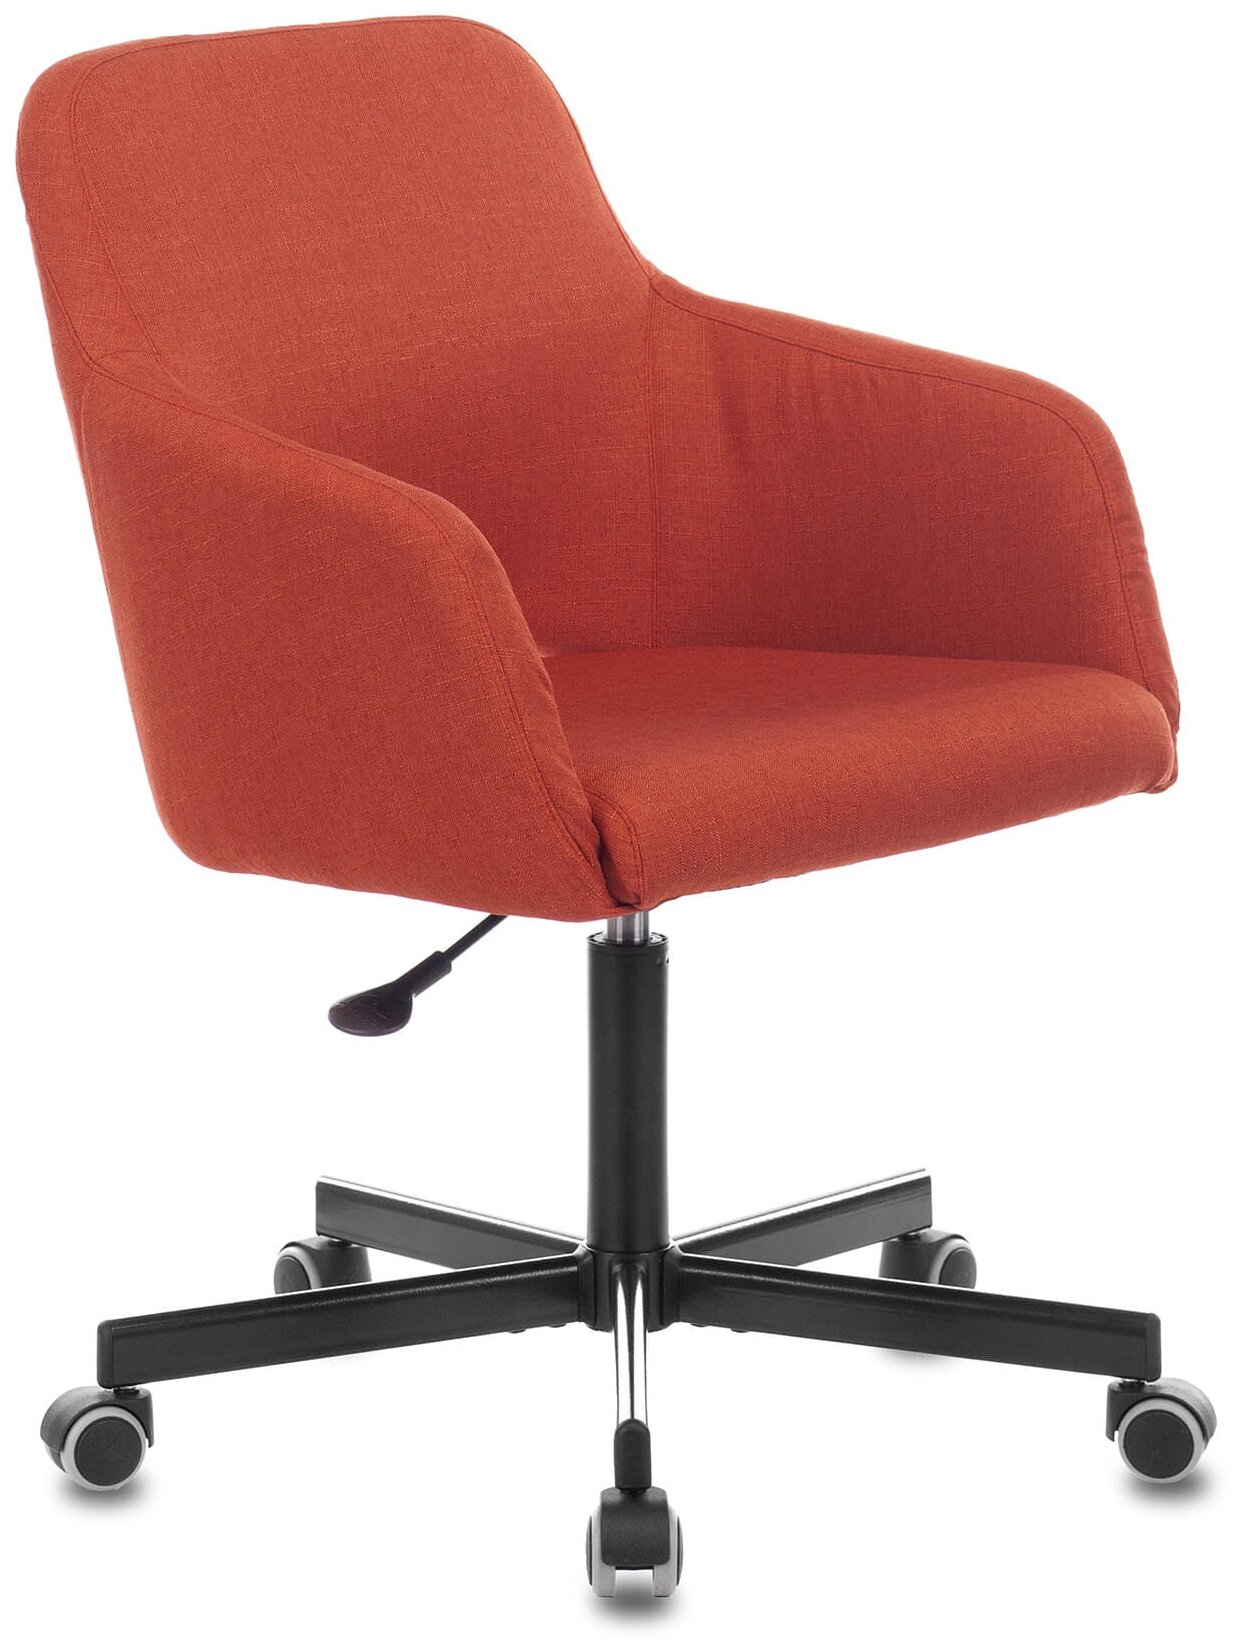 Кресло компьютерное CH-380M теплый кирпич, ткань / Офисное кресло для оператора, персонала, сотрудника, для дома